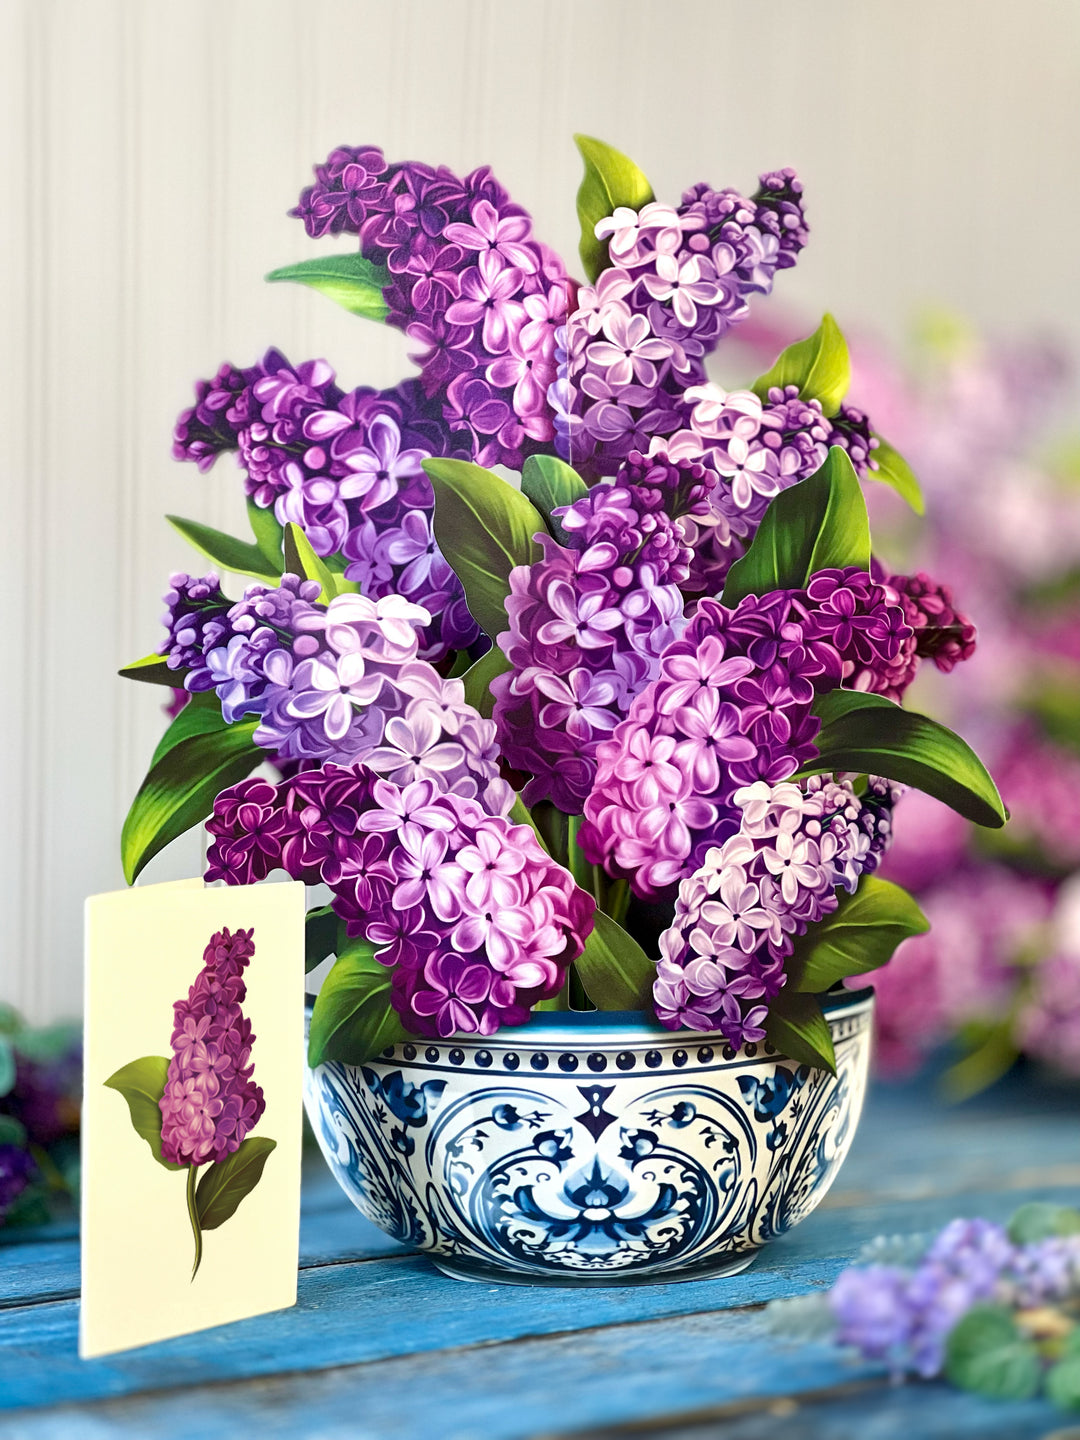 Pop Up Flower Bouquet Greeting Card - Garden Lilacs